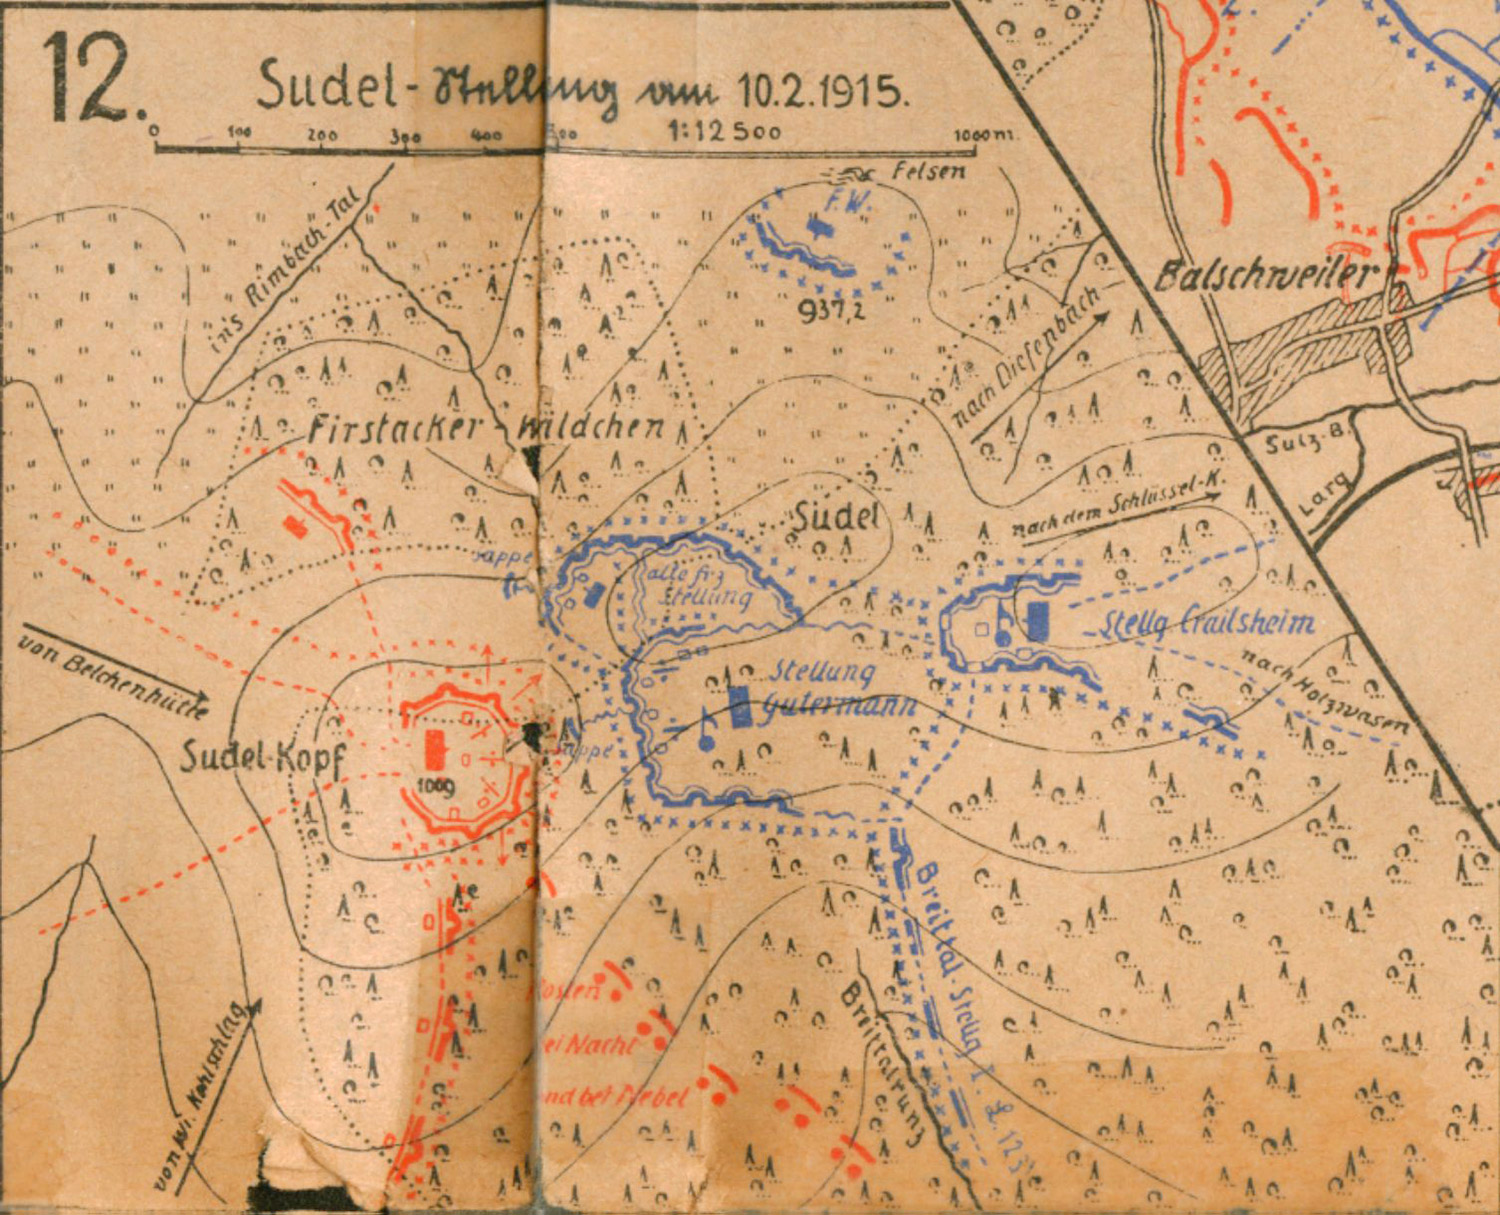 Die Stellung Crailsheim am Sudelkopf im Februar 1915